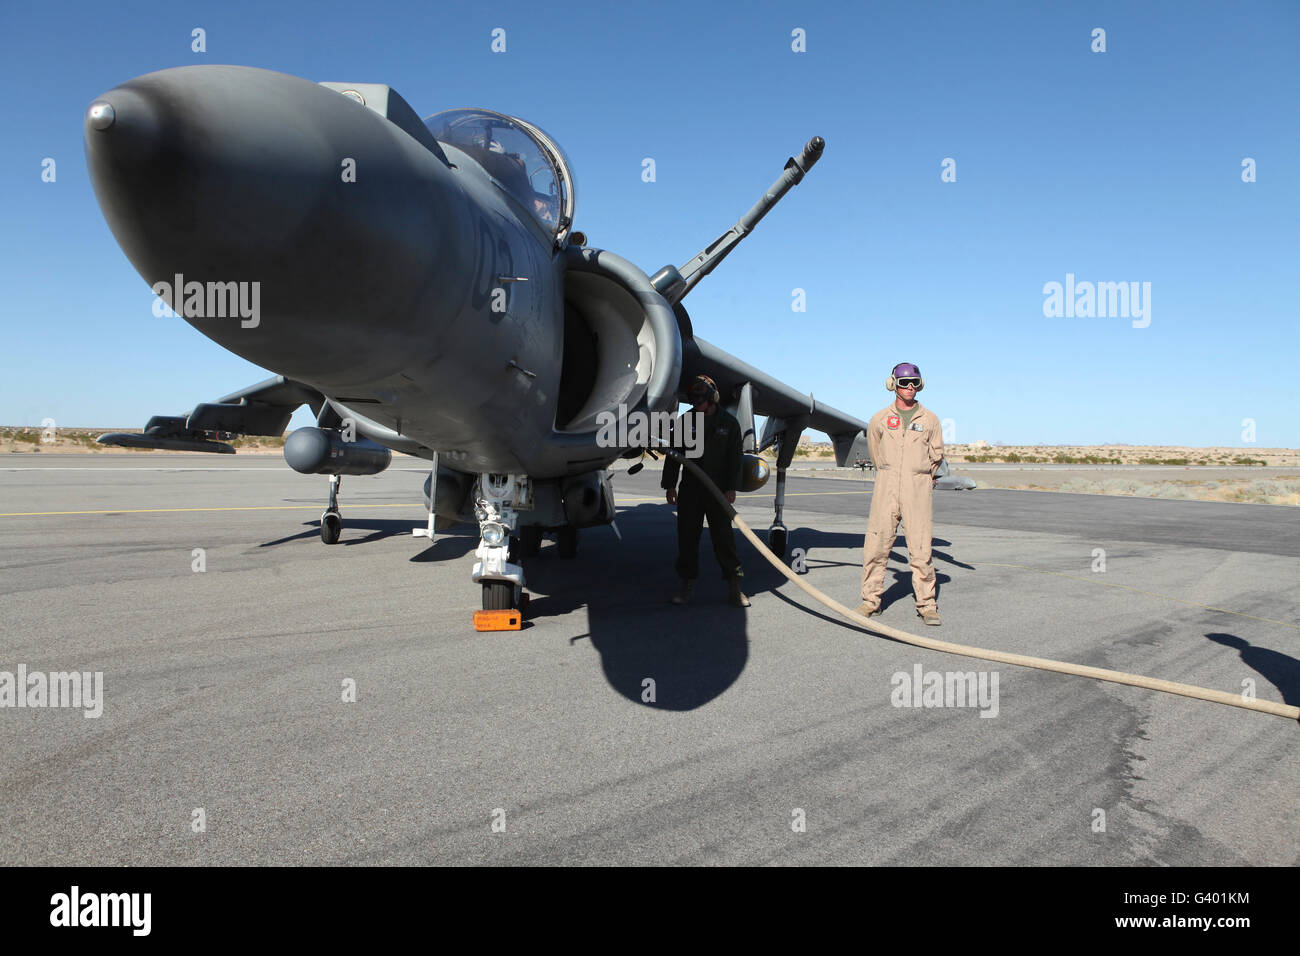 US Marine Corps Air Besatzungsmitglieder tanken ein AV-8 b Harrier II Flugzeug. Stockfoto